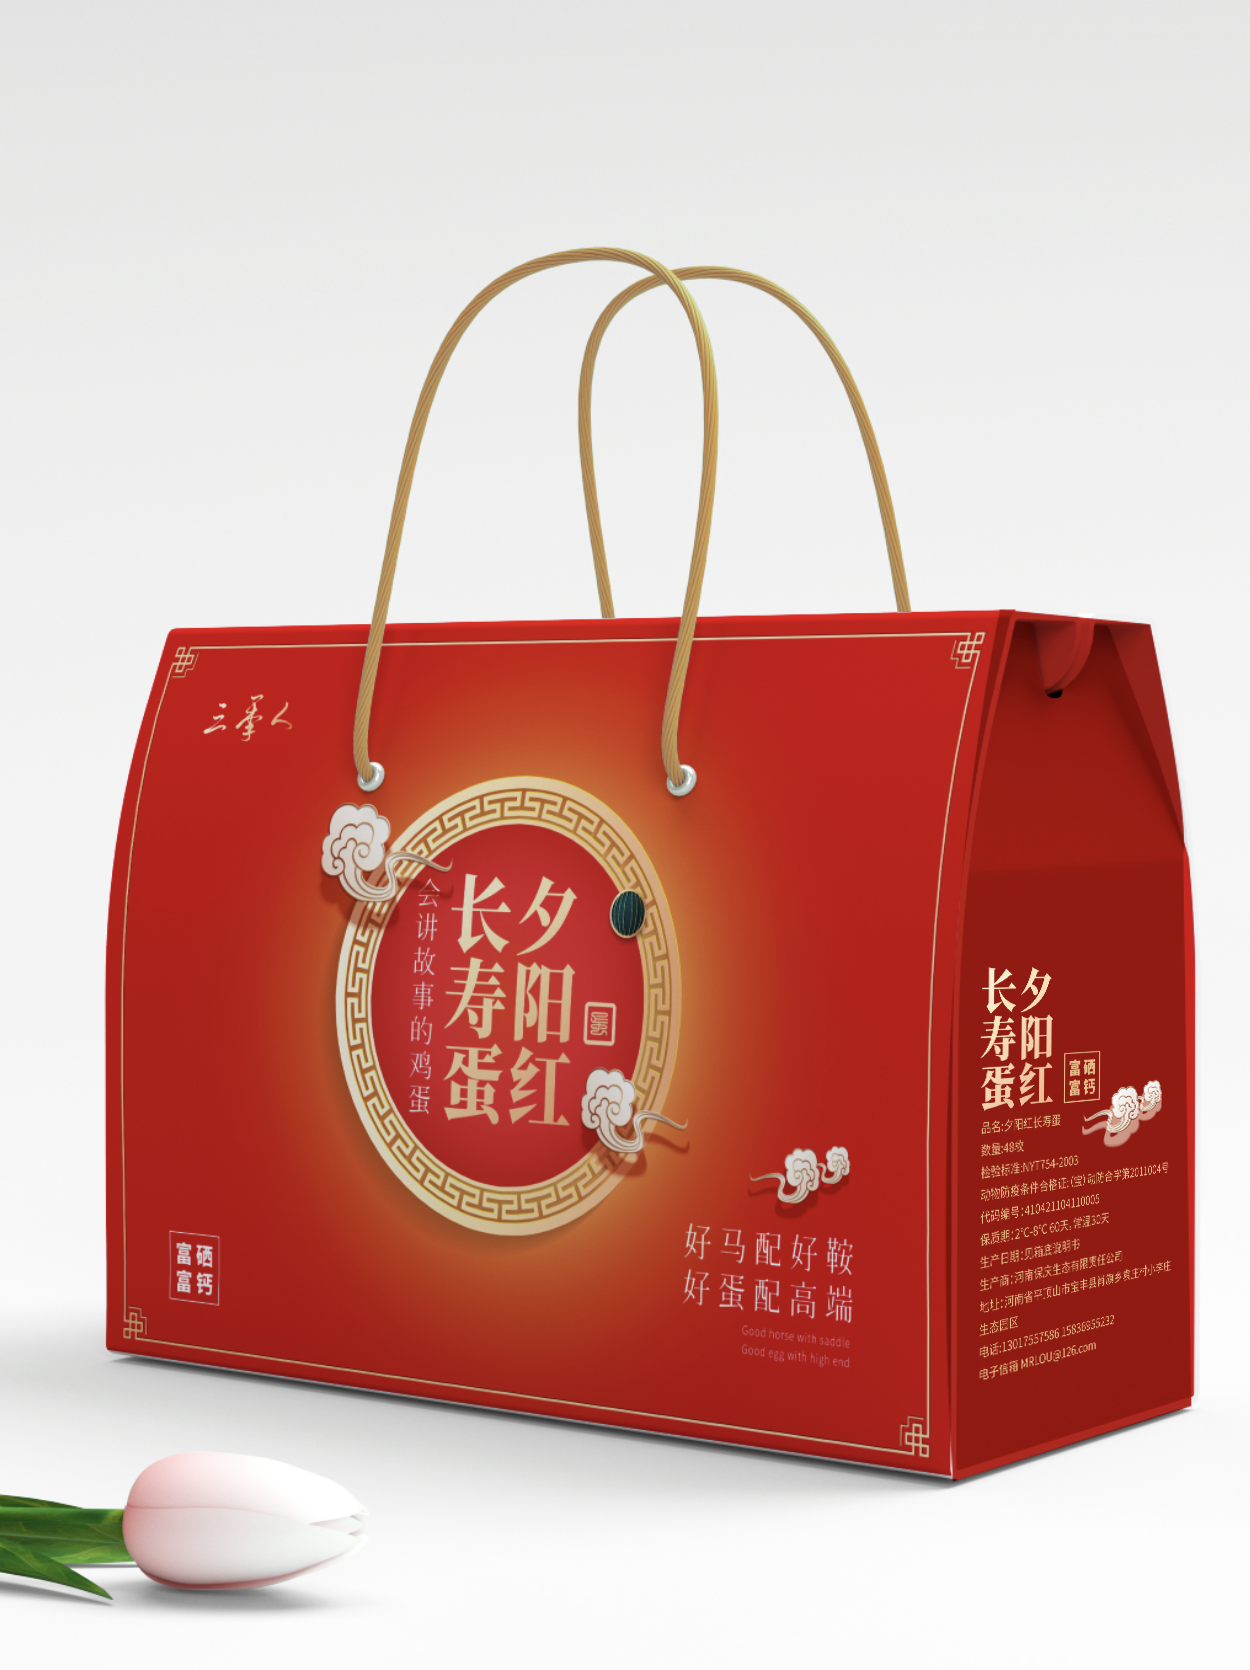 热门浙江礼盒包装设计公司案例排名前六名单公布 